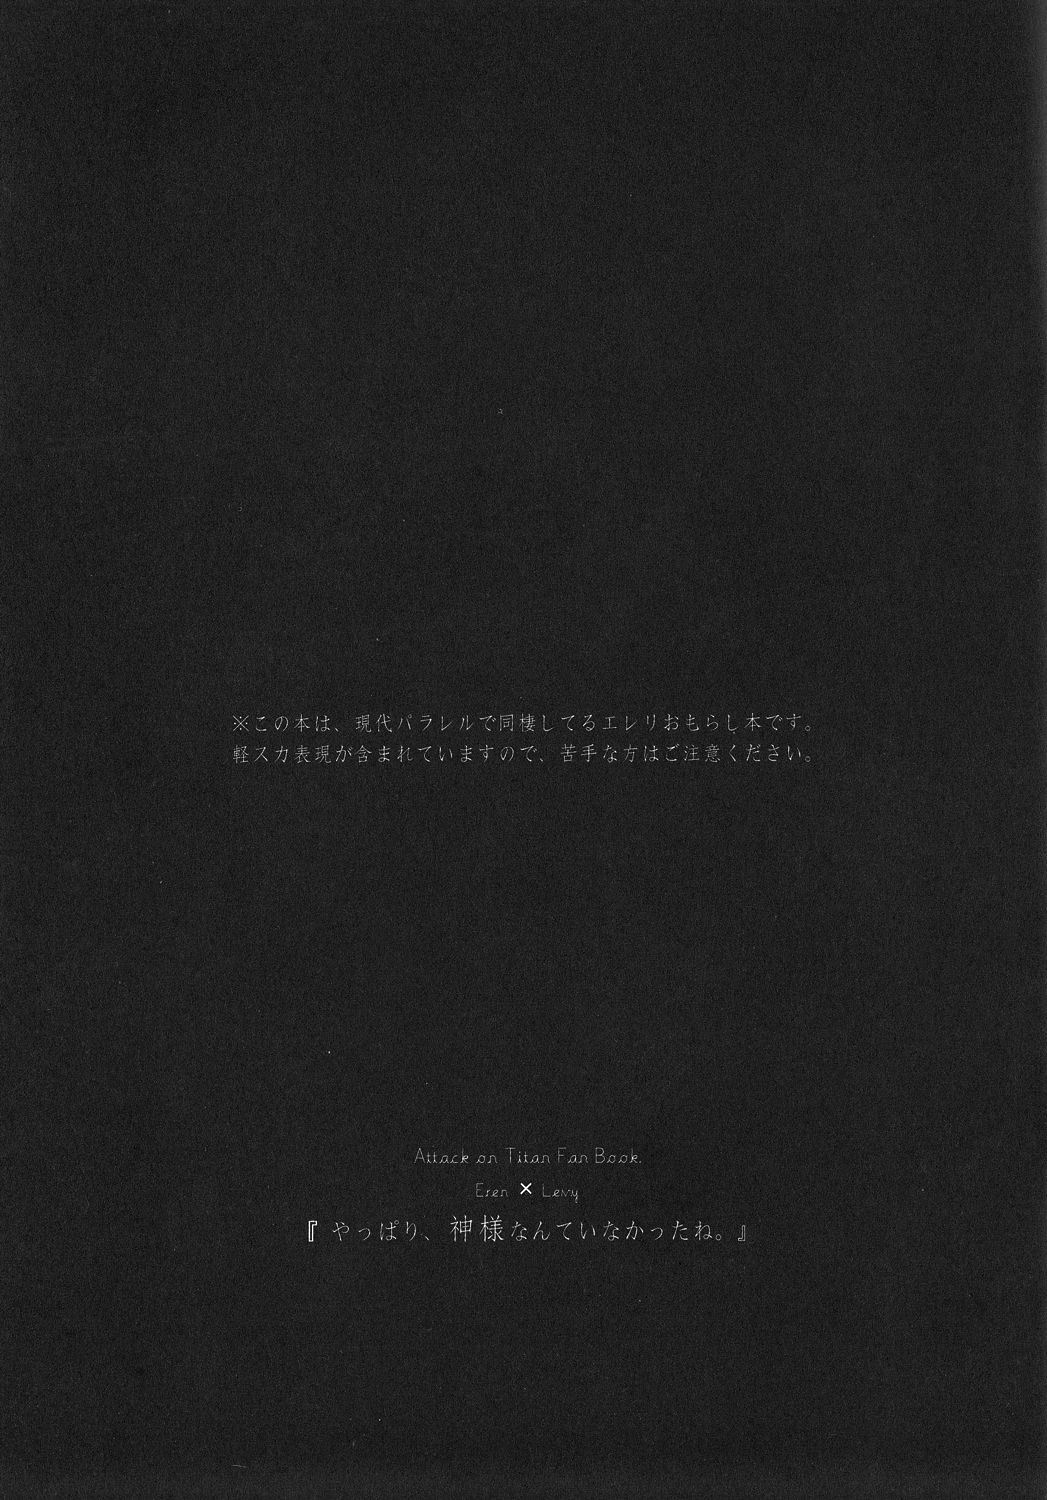 (SUPER22) [KSK. (Haruchika)] Yappari, Kamisama nante Inakatta ne. (Shingeki no Kyojin) [2nd Edition 2013-05-15] (SUPER22) [KSK. (ハルチカ)] やっぱり、神様なんていなかったね。 (進撃の巨人) [第二版 2013年05月15日]